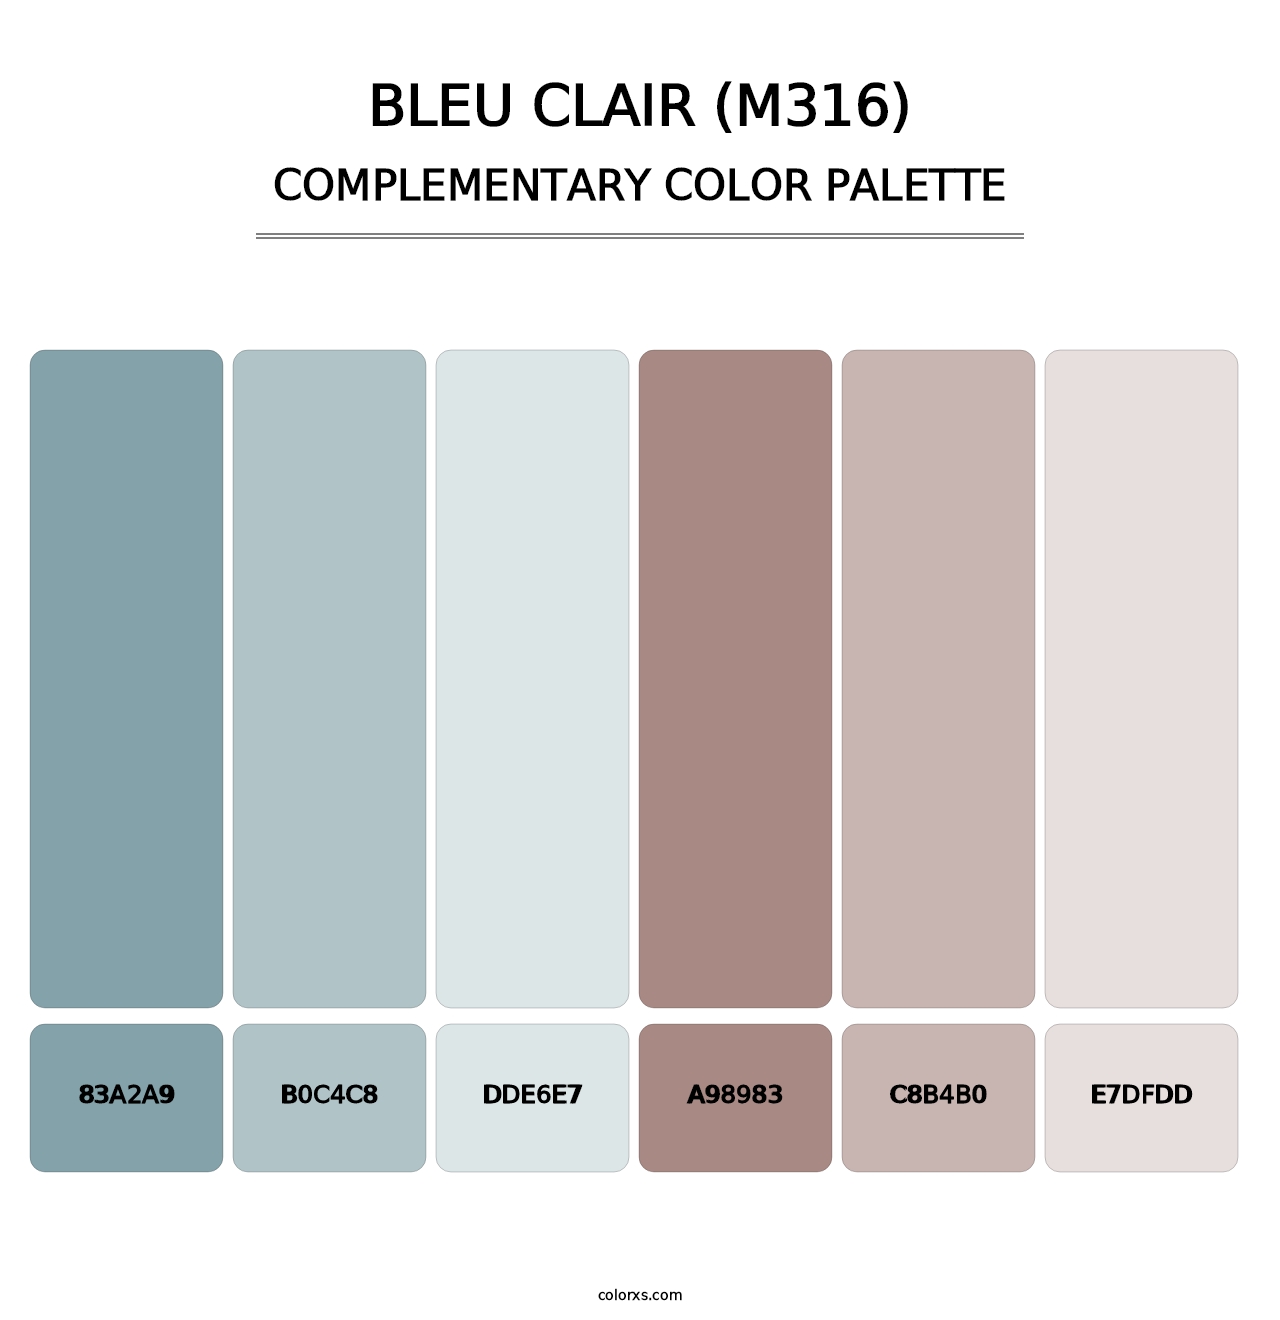 Bleu Clair (M316) - Complementary Color Palette